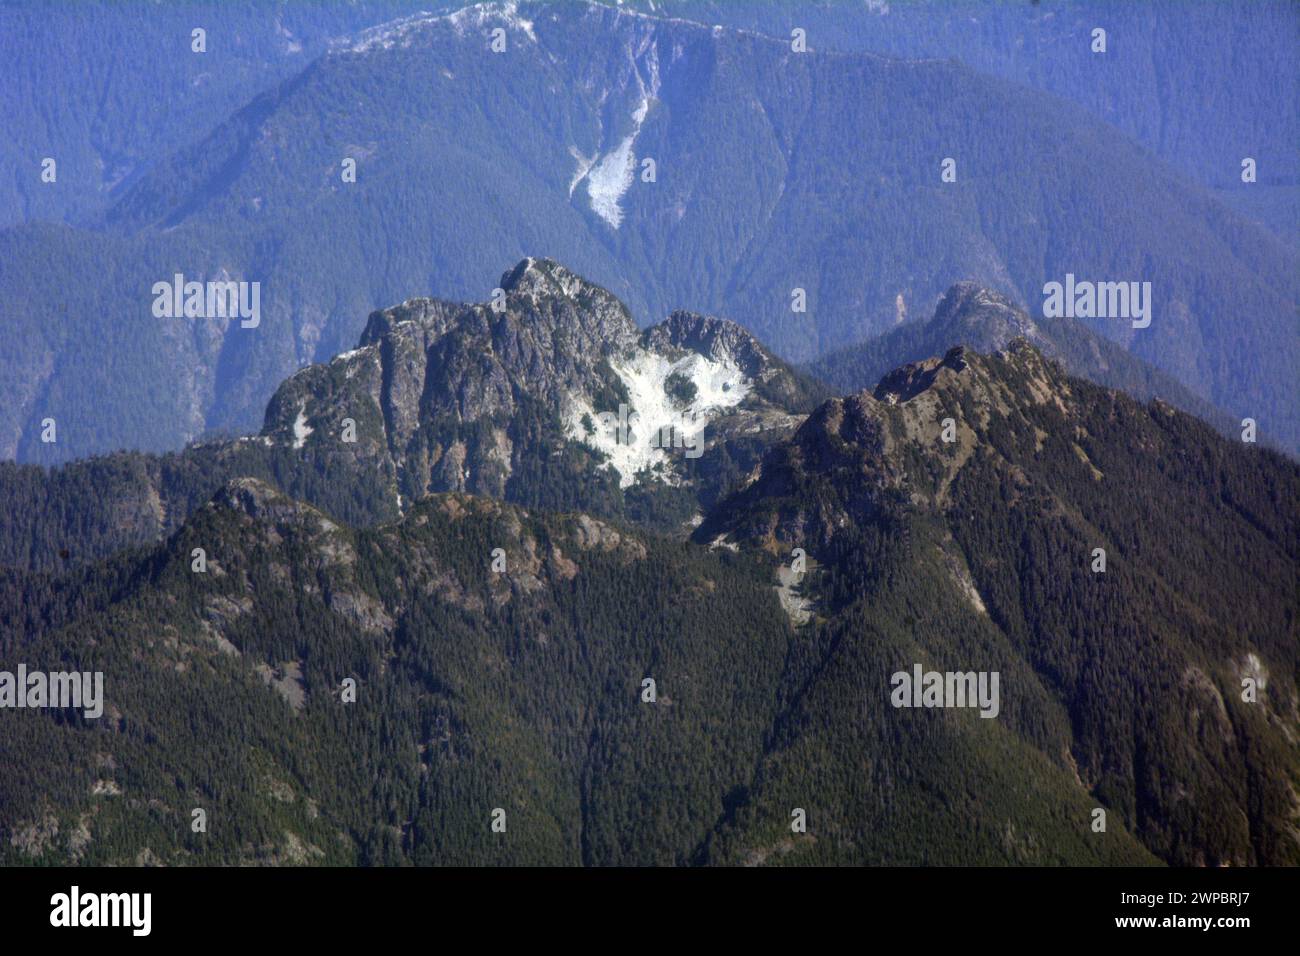 Vue aérienne des sommets et des crêtes du mont Hanover et du mont Brunswick, dans les montagnes de la rive nord, près de la baie du Lion, Colombie-Britannique, Canada. Banque D'Images